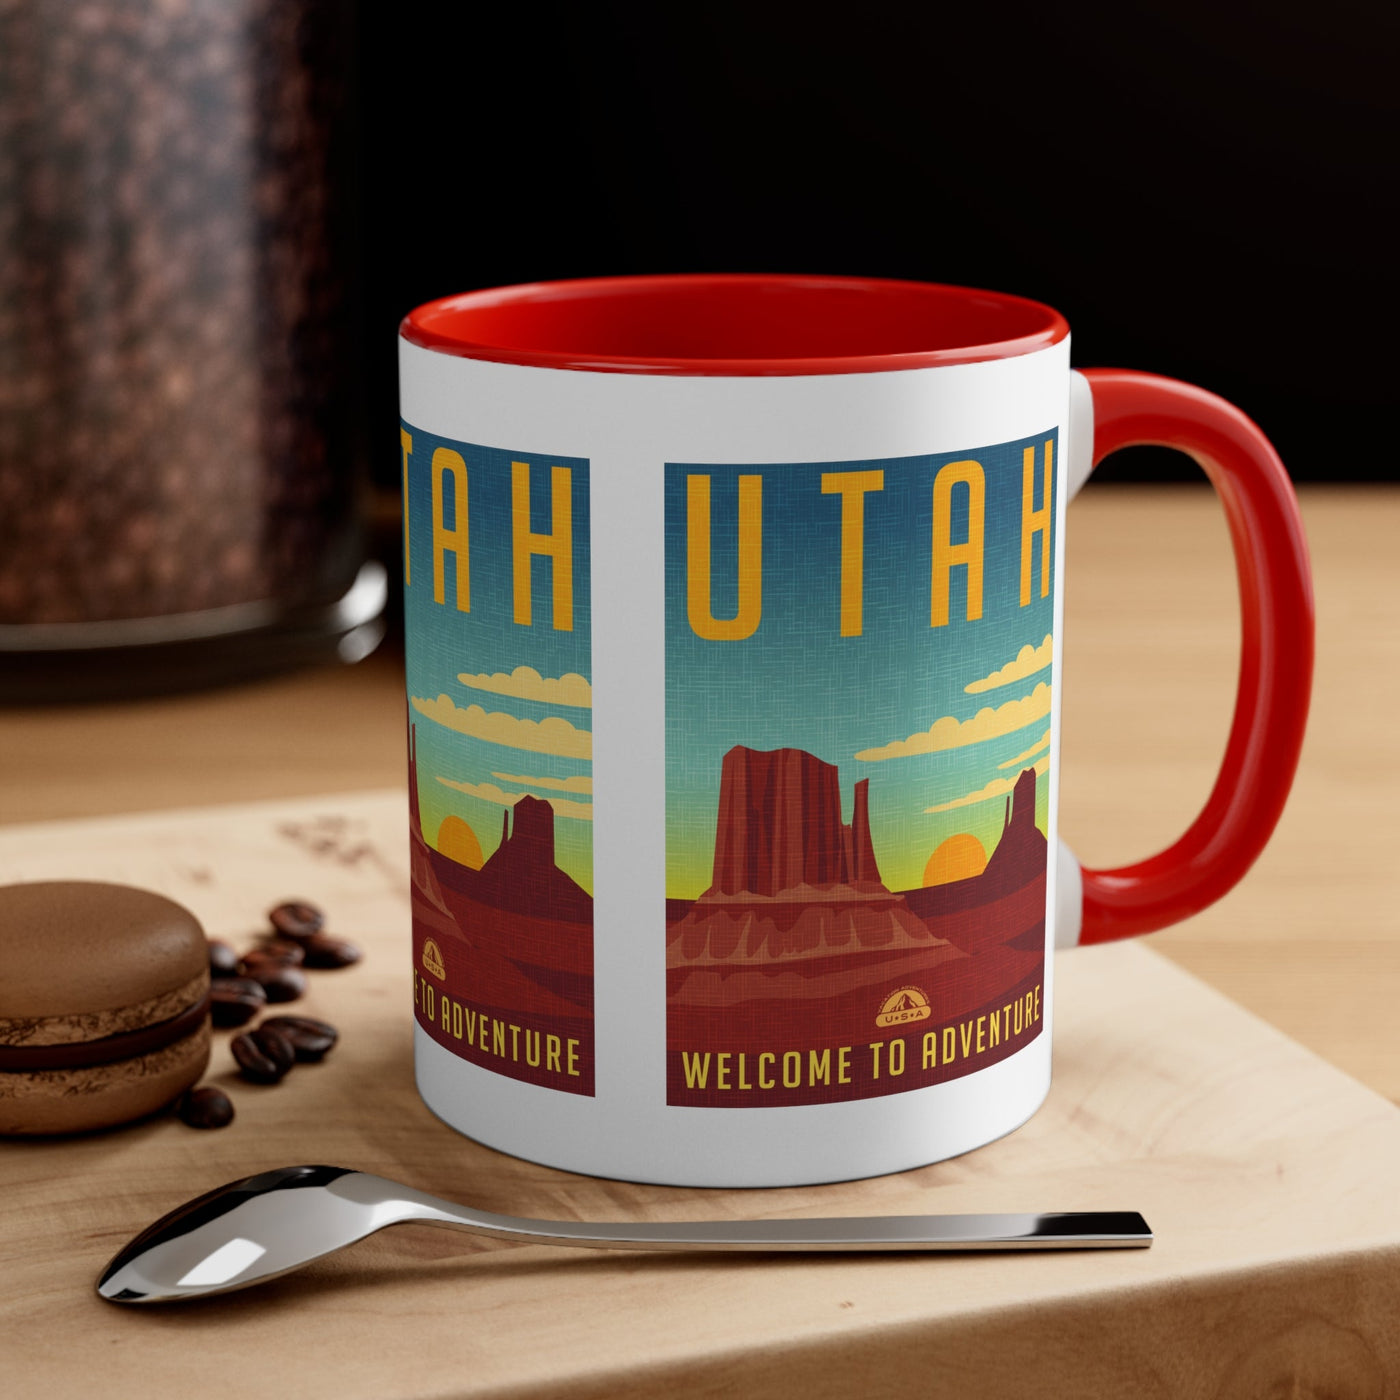 Utah Coffee Mug - Ezra's Clothing